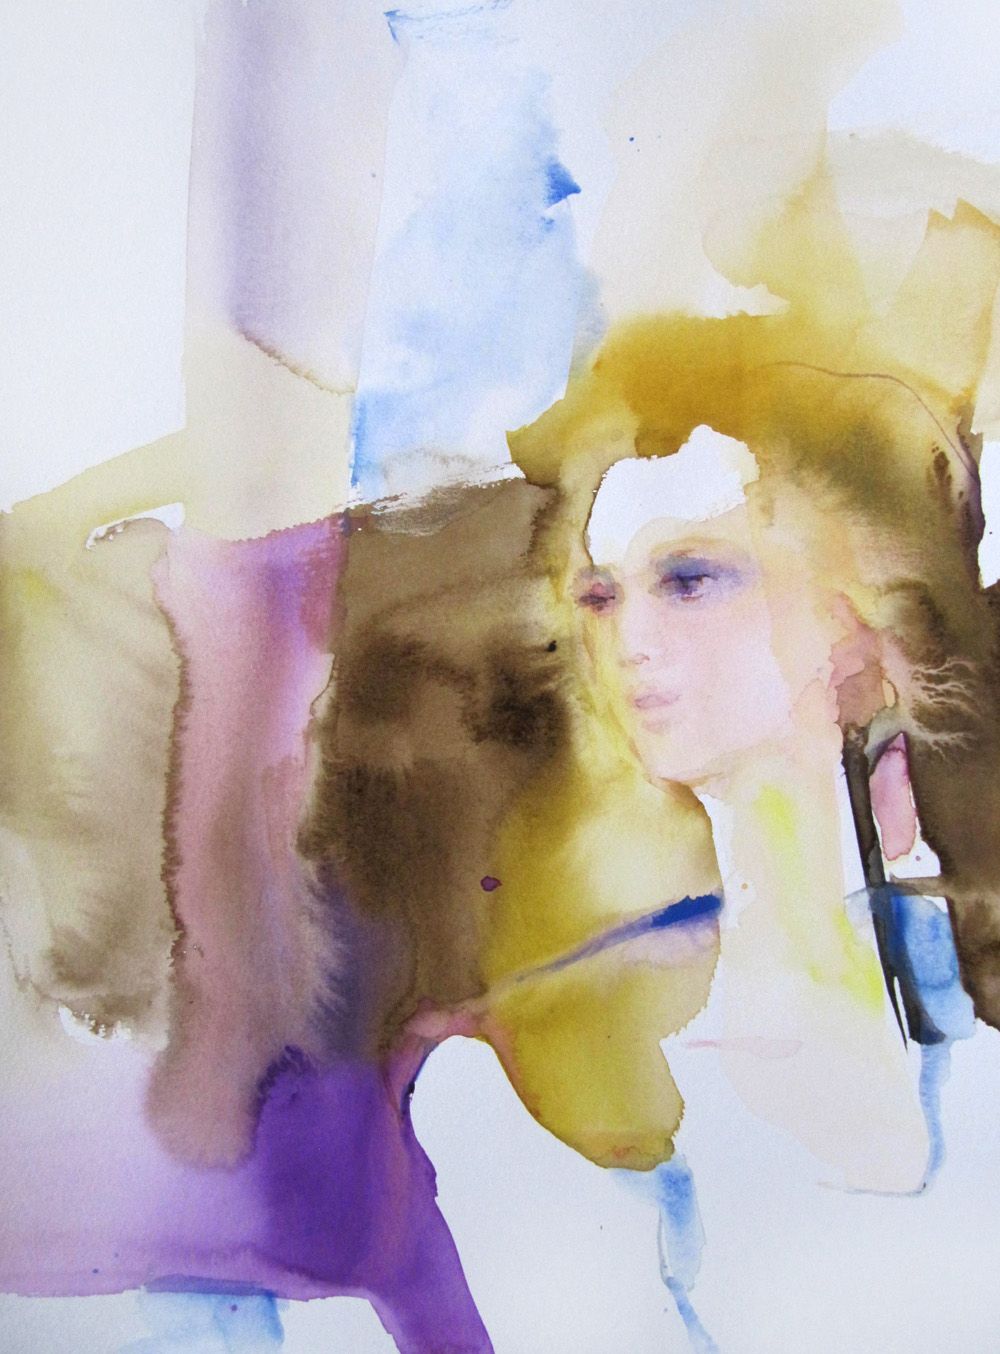 "Brise matinale" de Sylvia Baldeva pintura colorista de una mujer, inspirada, ligereza, estado del ser, expresionismo, acuarela sobre papel Canson